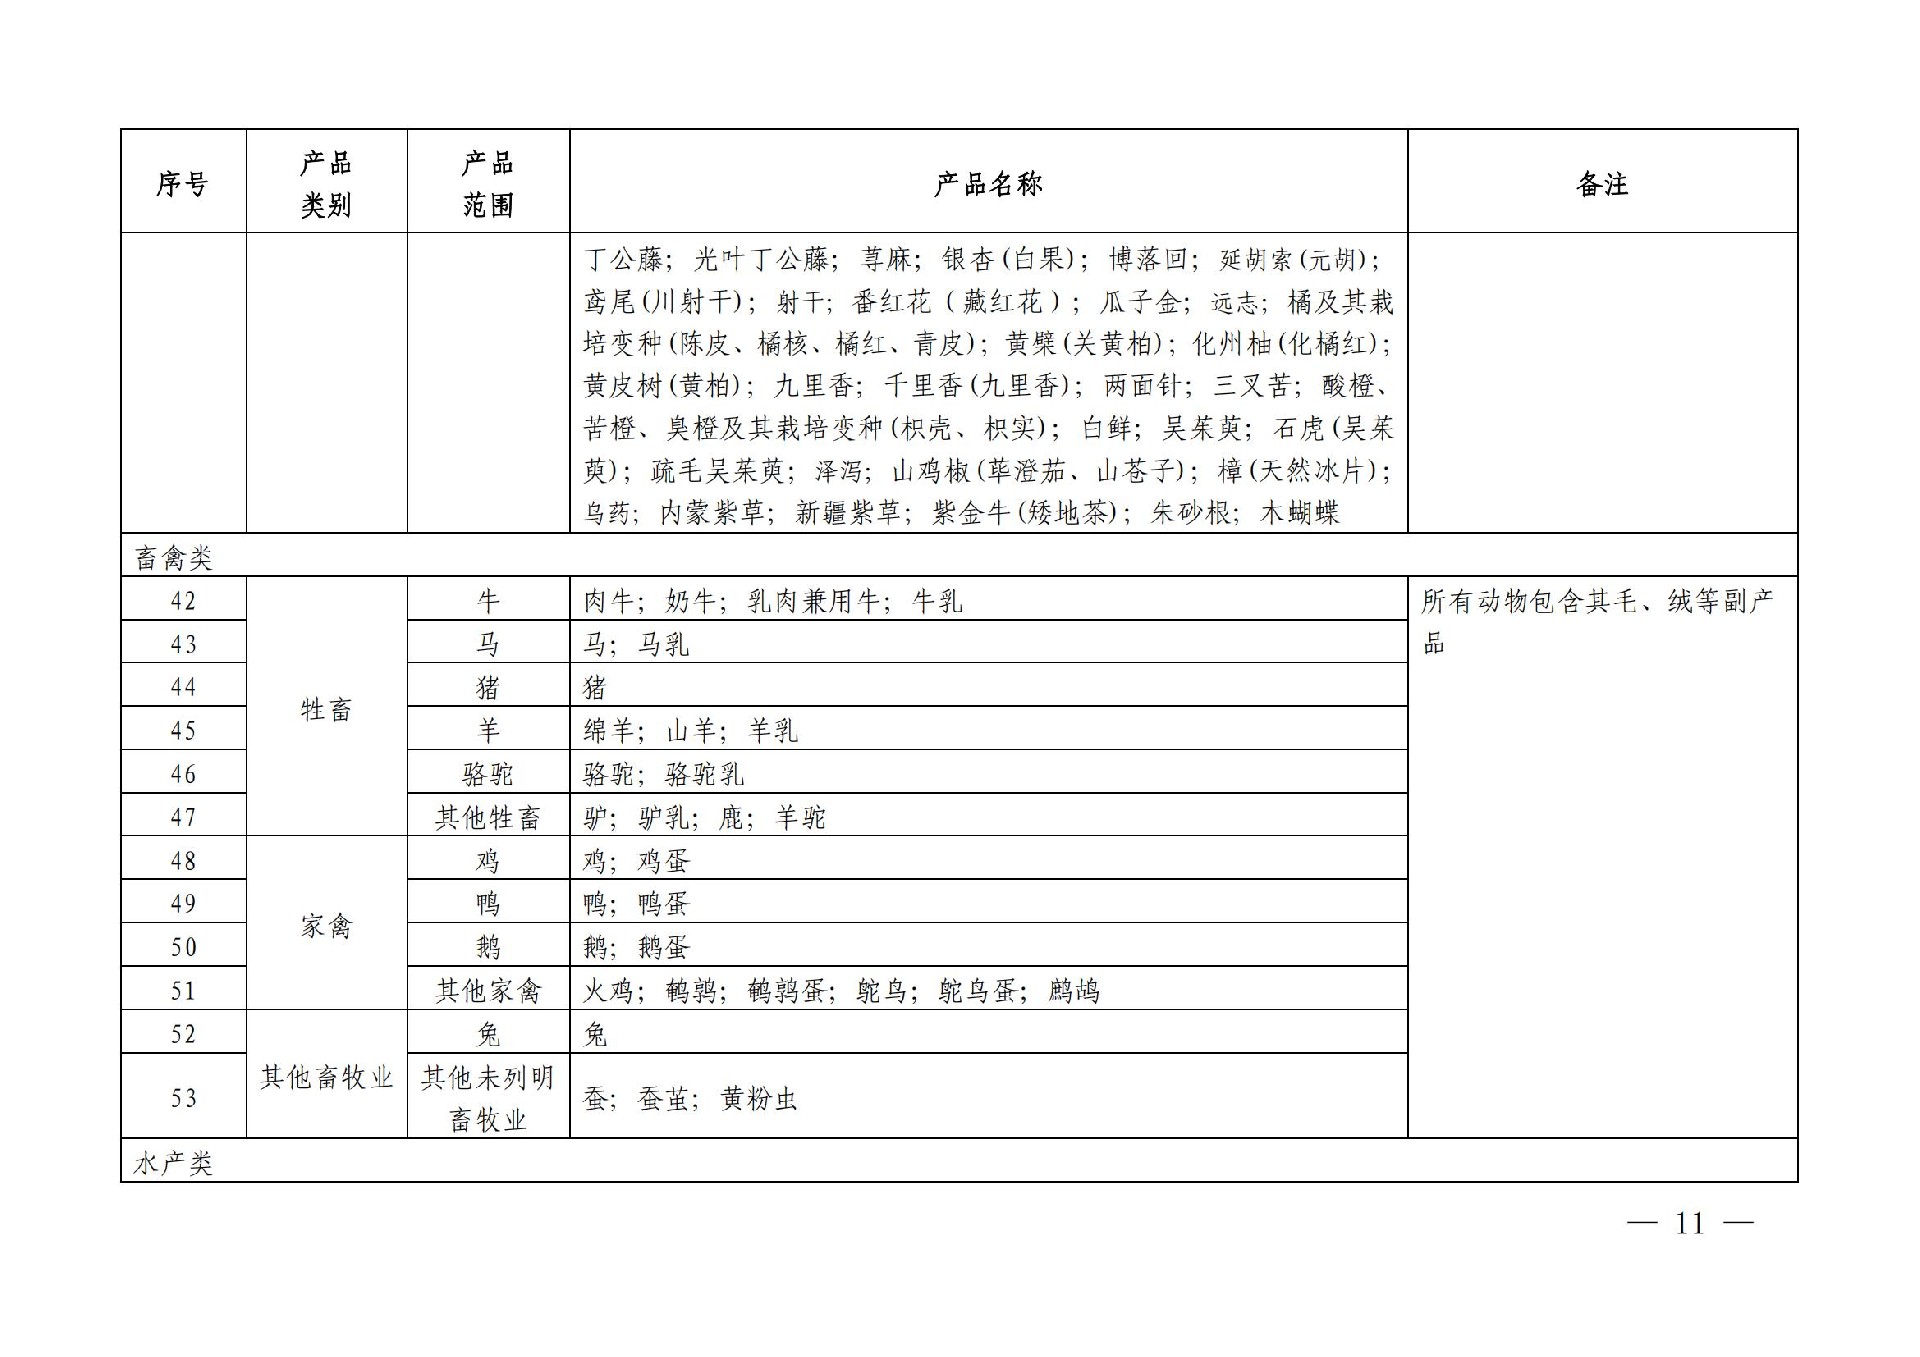 有机产品认证目录【认监委2019年第22号公告】(1)_10.jpg